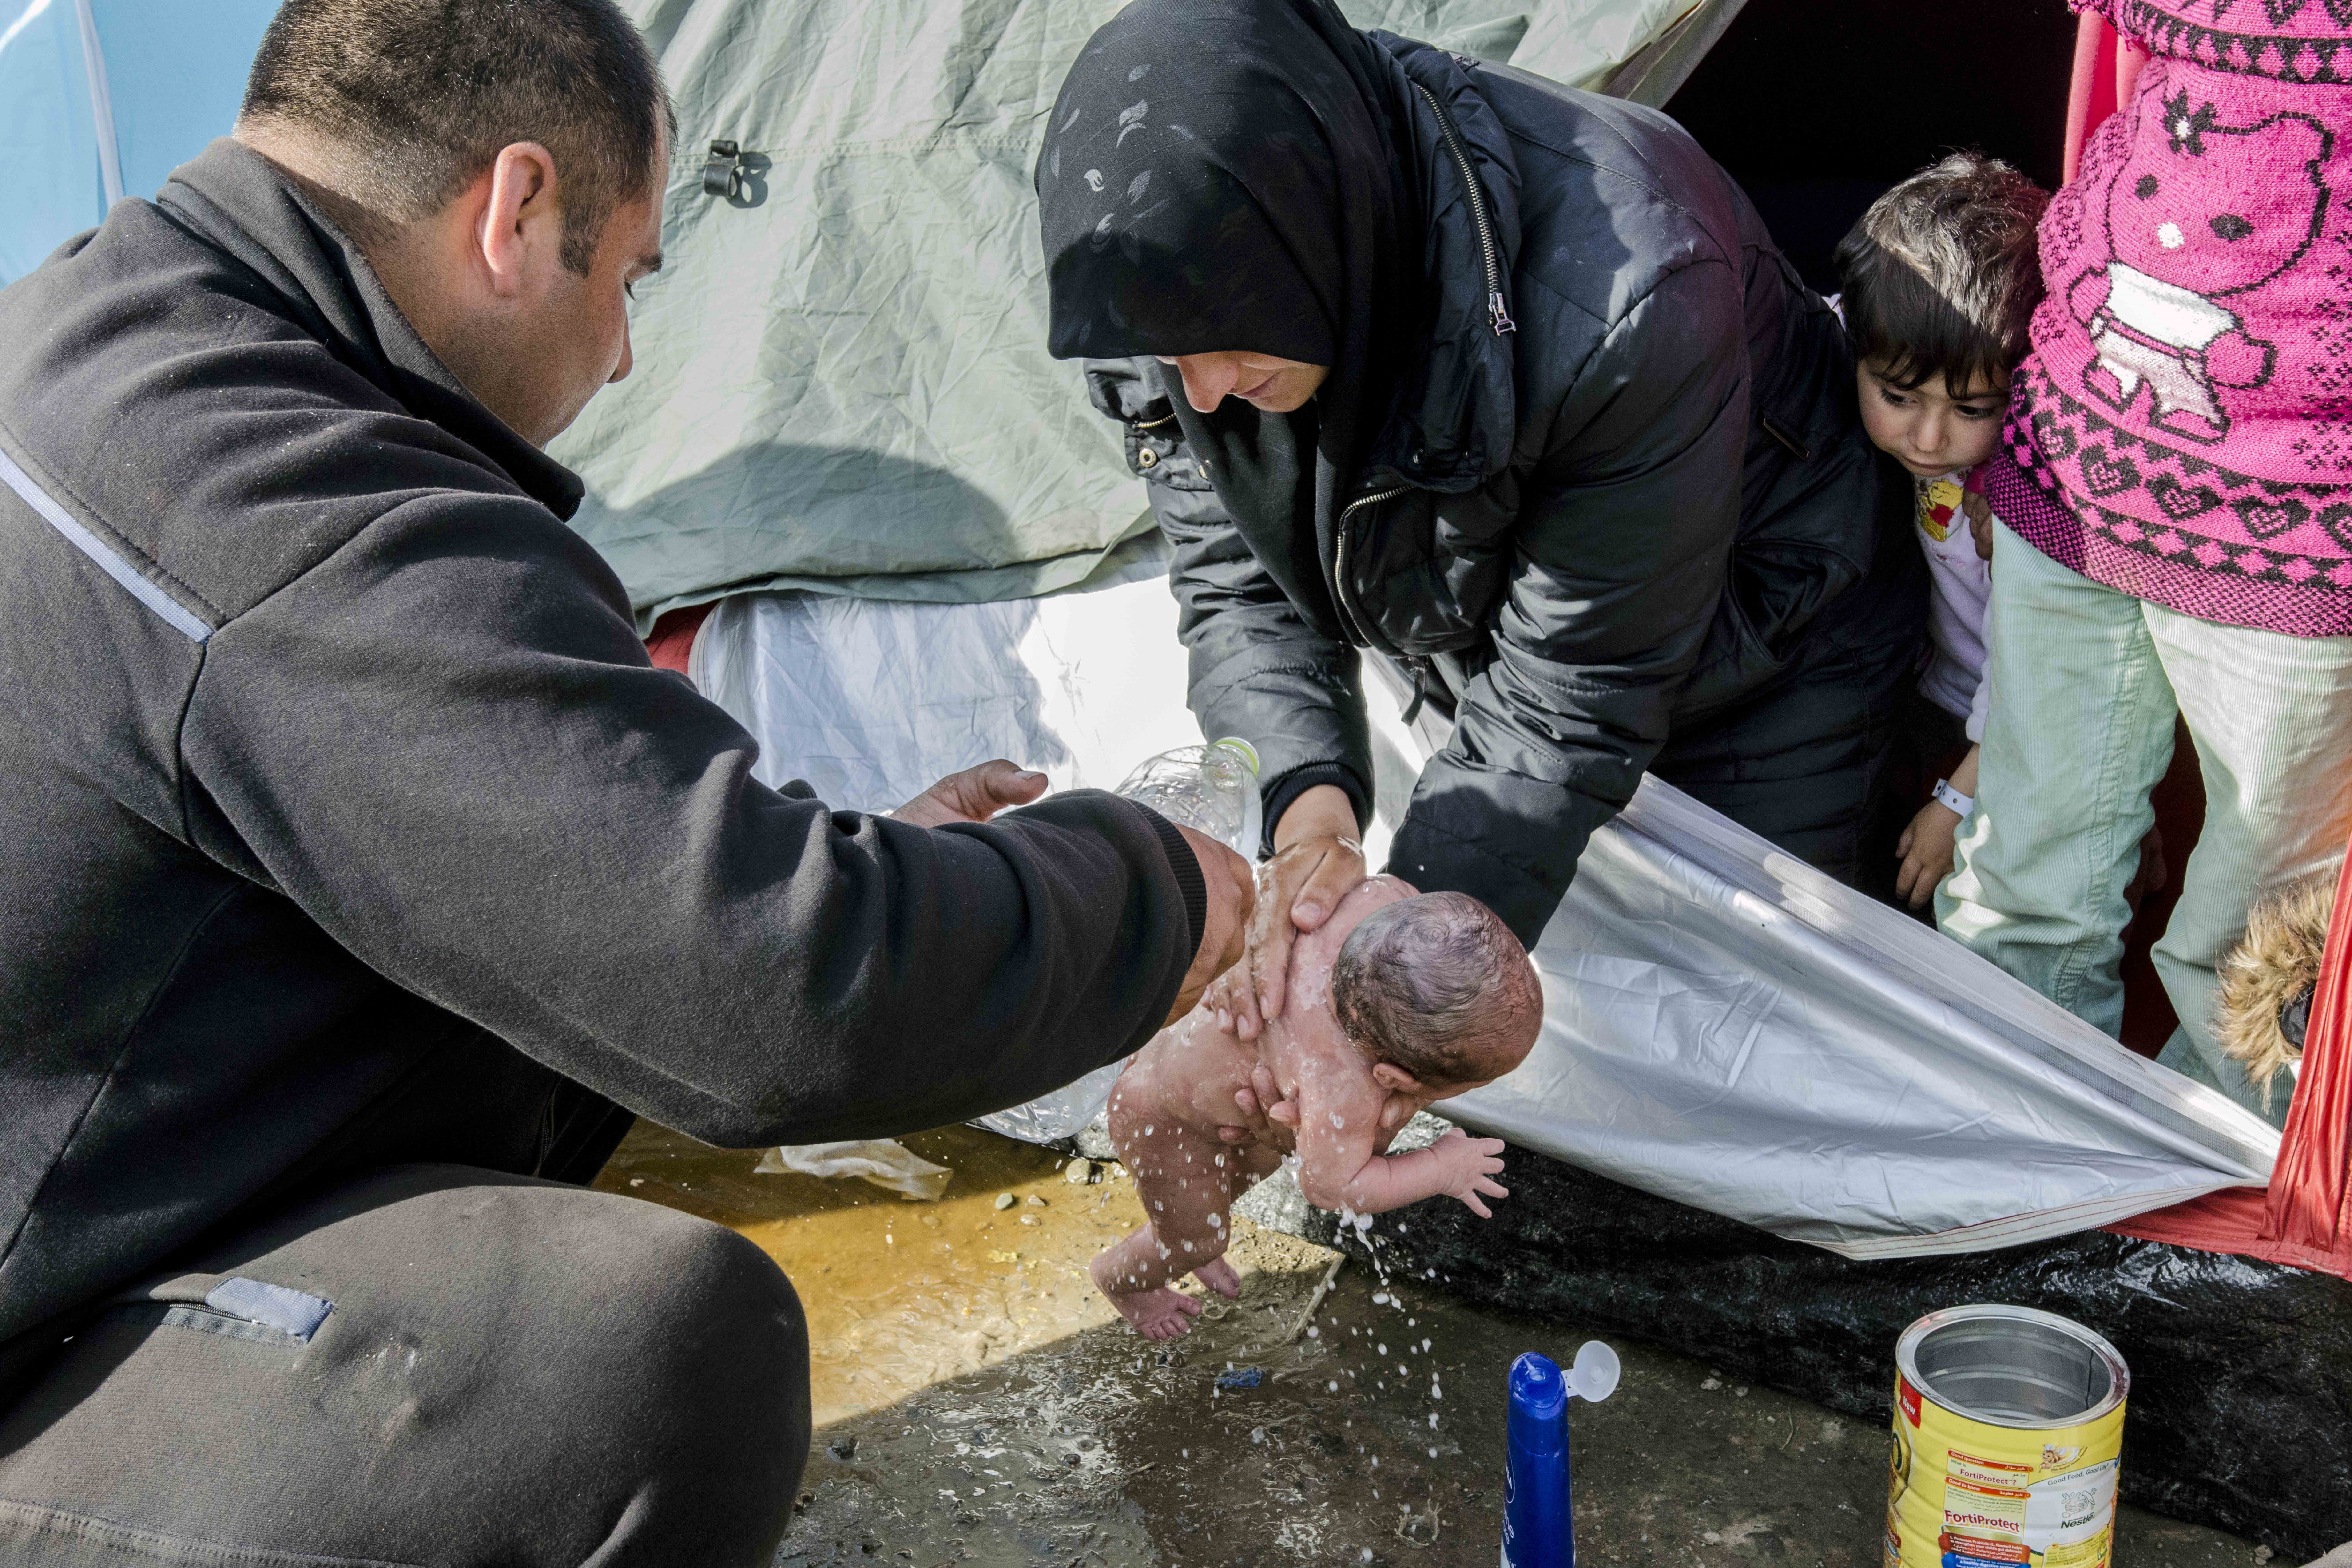 Pocsolyában fürdetett csecsemő fényképe mutatja meg, milyenek az állapotok az EU határán